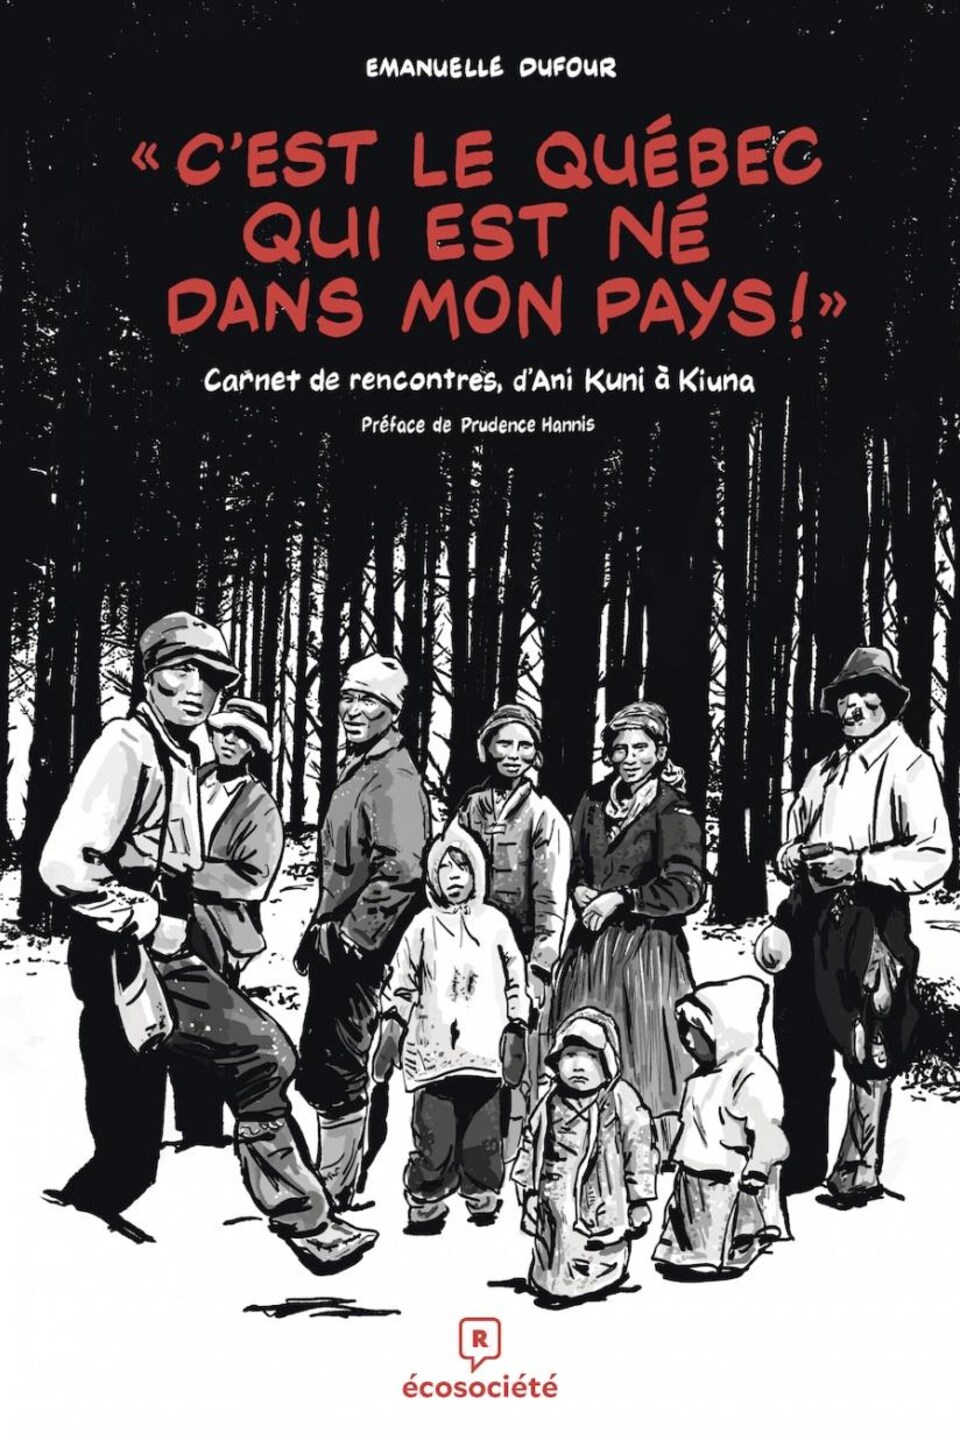 Couverture du livre C'est le Québec qui est né dans mon pays. Illustration d'une famille autochtone.